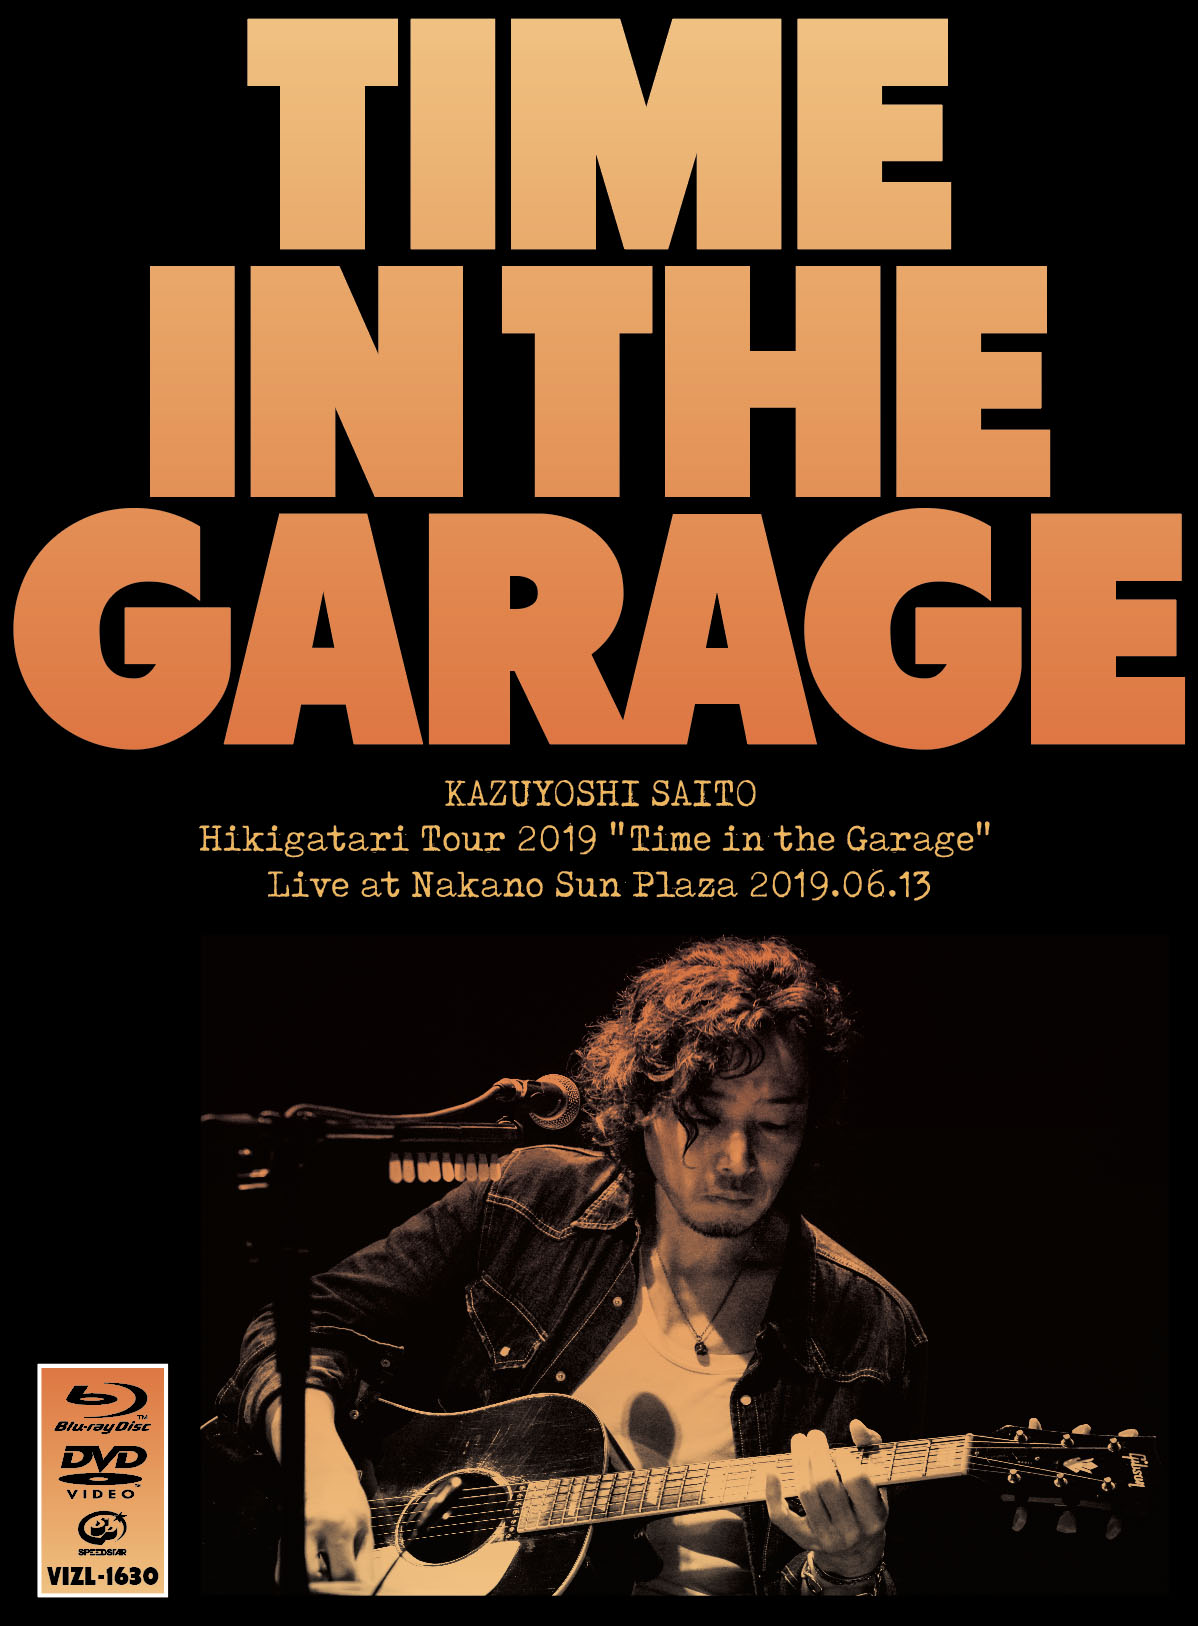 KAZUYOSHI SAITO - hikigatari tour 2019 time in the garage-1